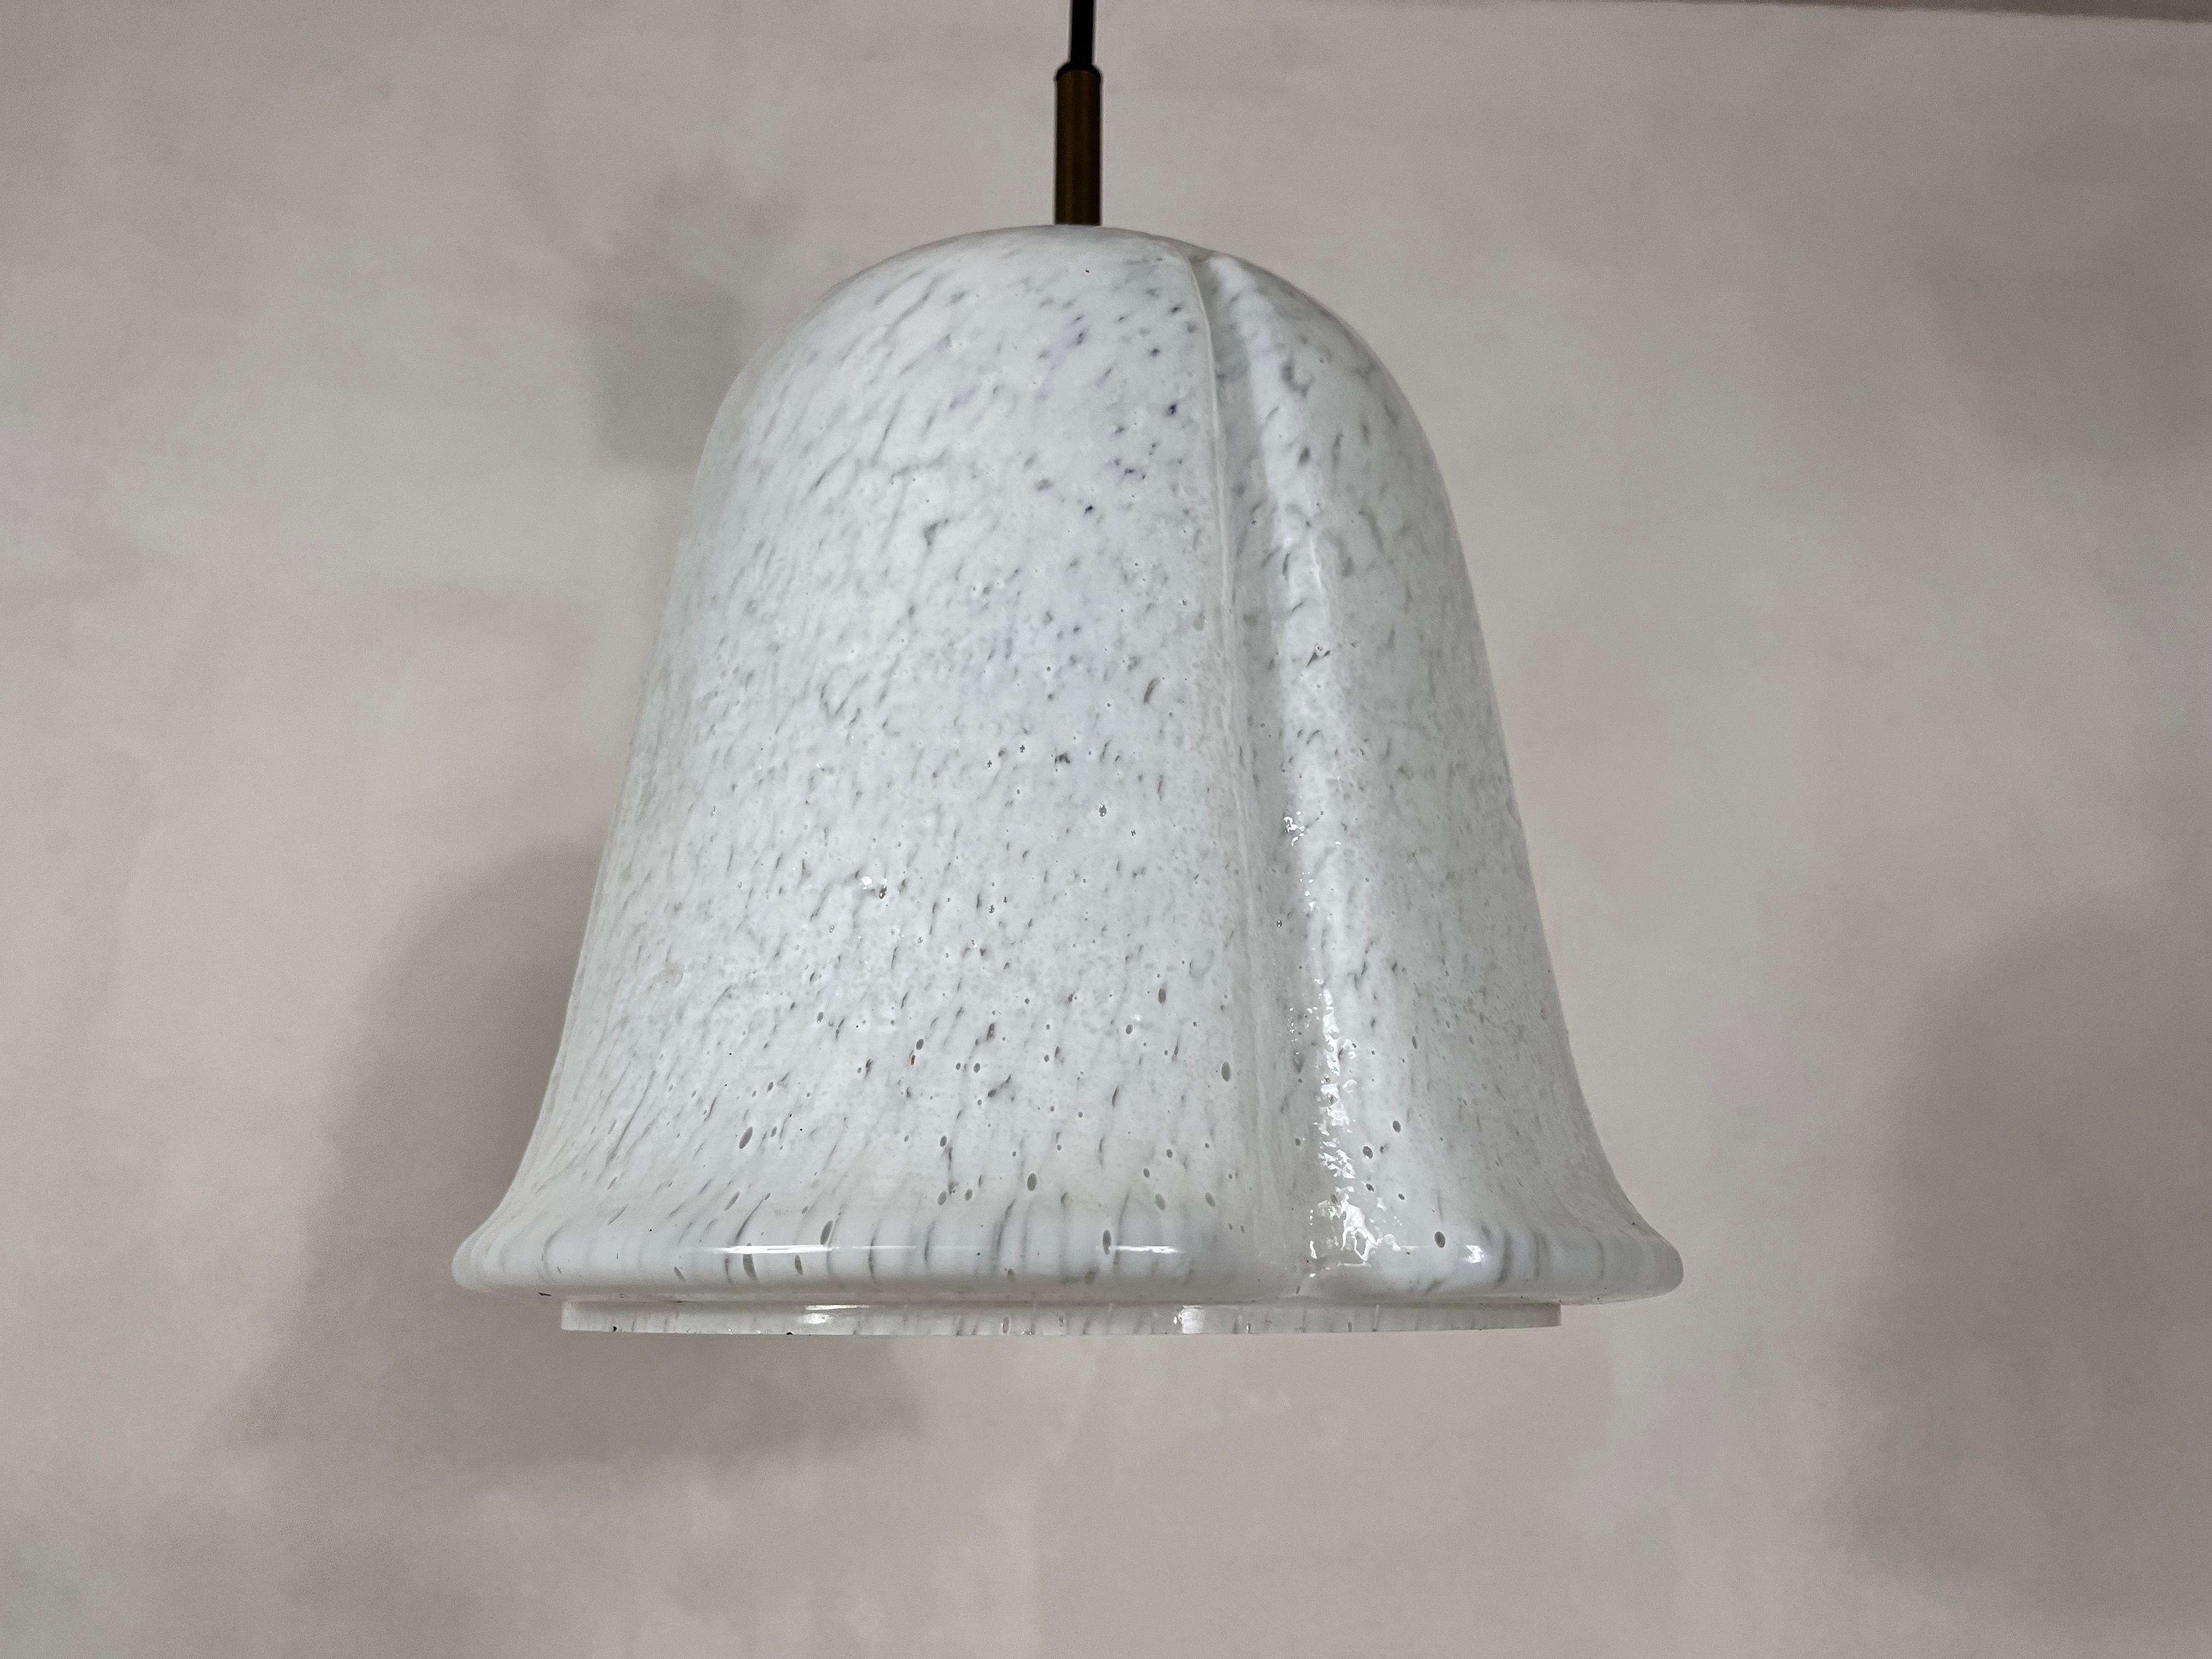 Lampe suspendue de Glashütte Limburg, fabriquée dans les années 1960 en Allemagne. Il est fascinant avec sa belle forme et son verre à bulles. Le luminaire présente un design minimaliste très agréable. Hauteur réglable de 55 à 80 cm.

La lampe